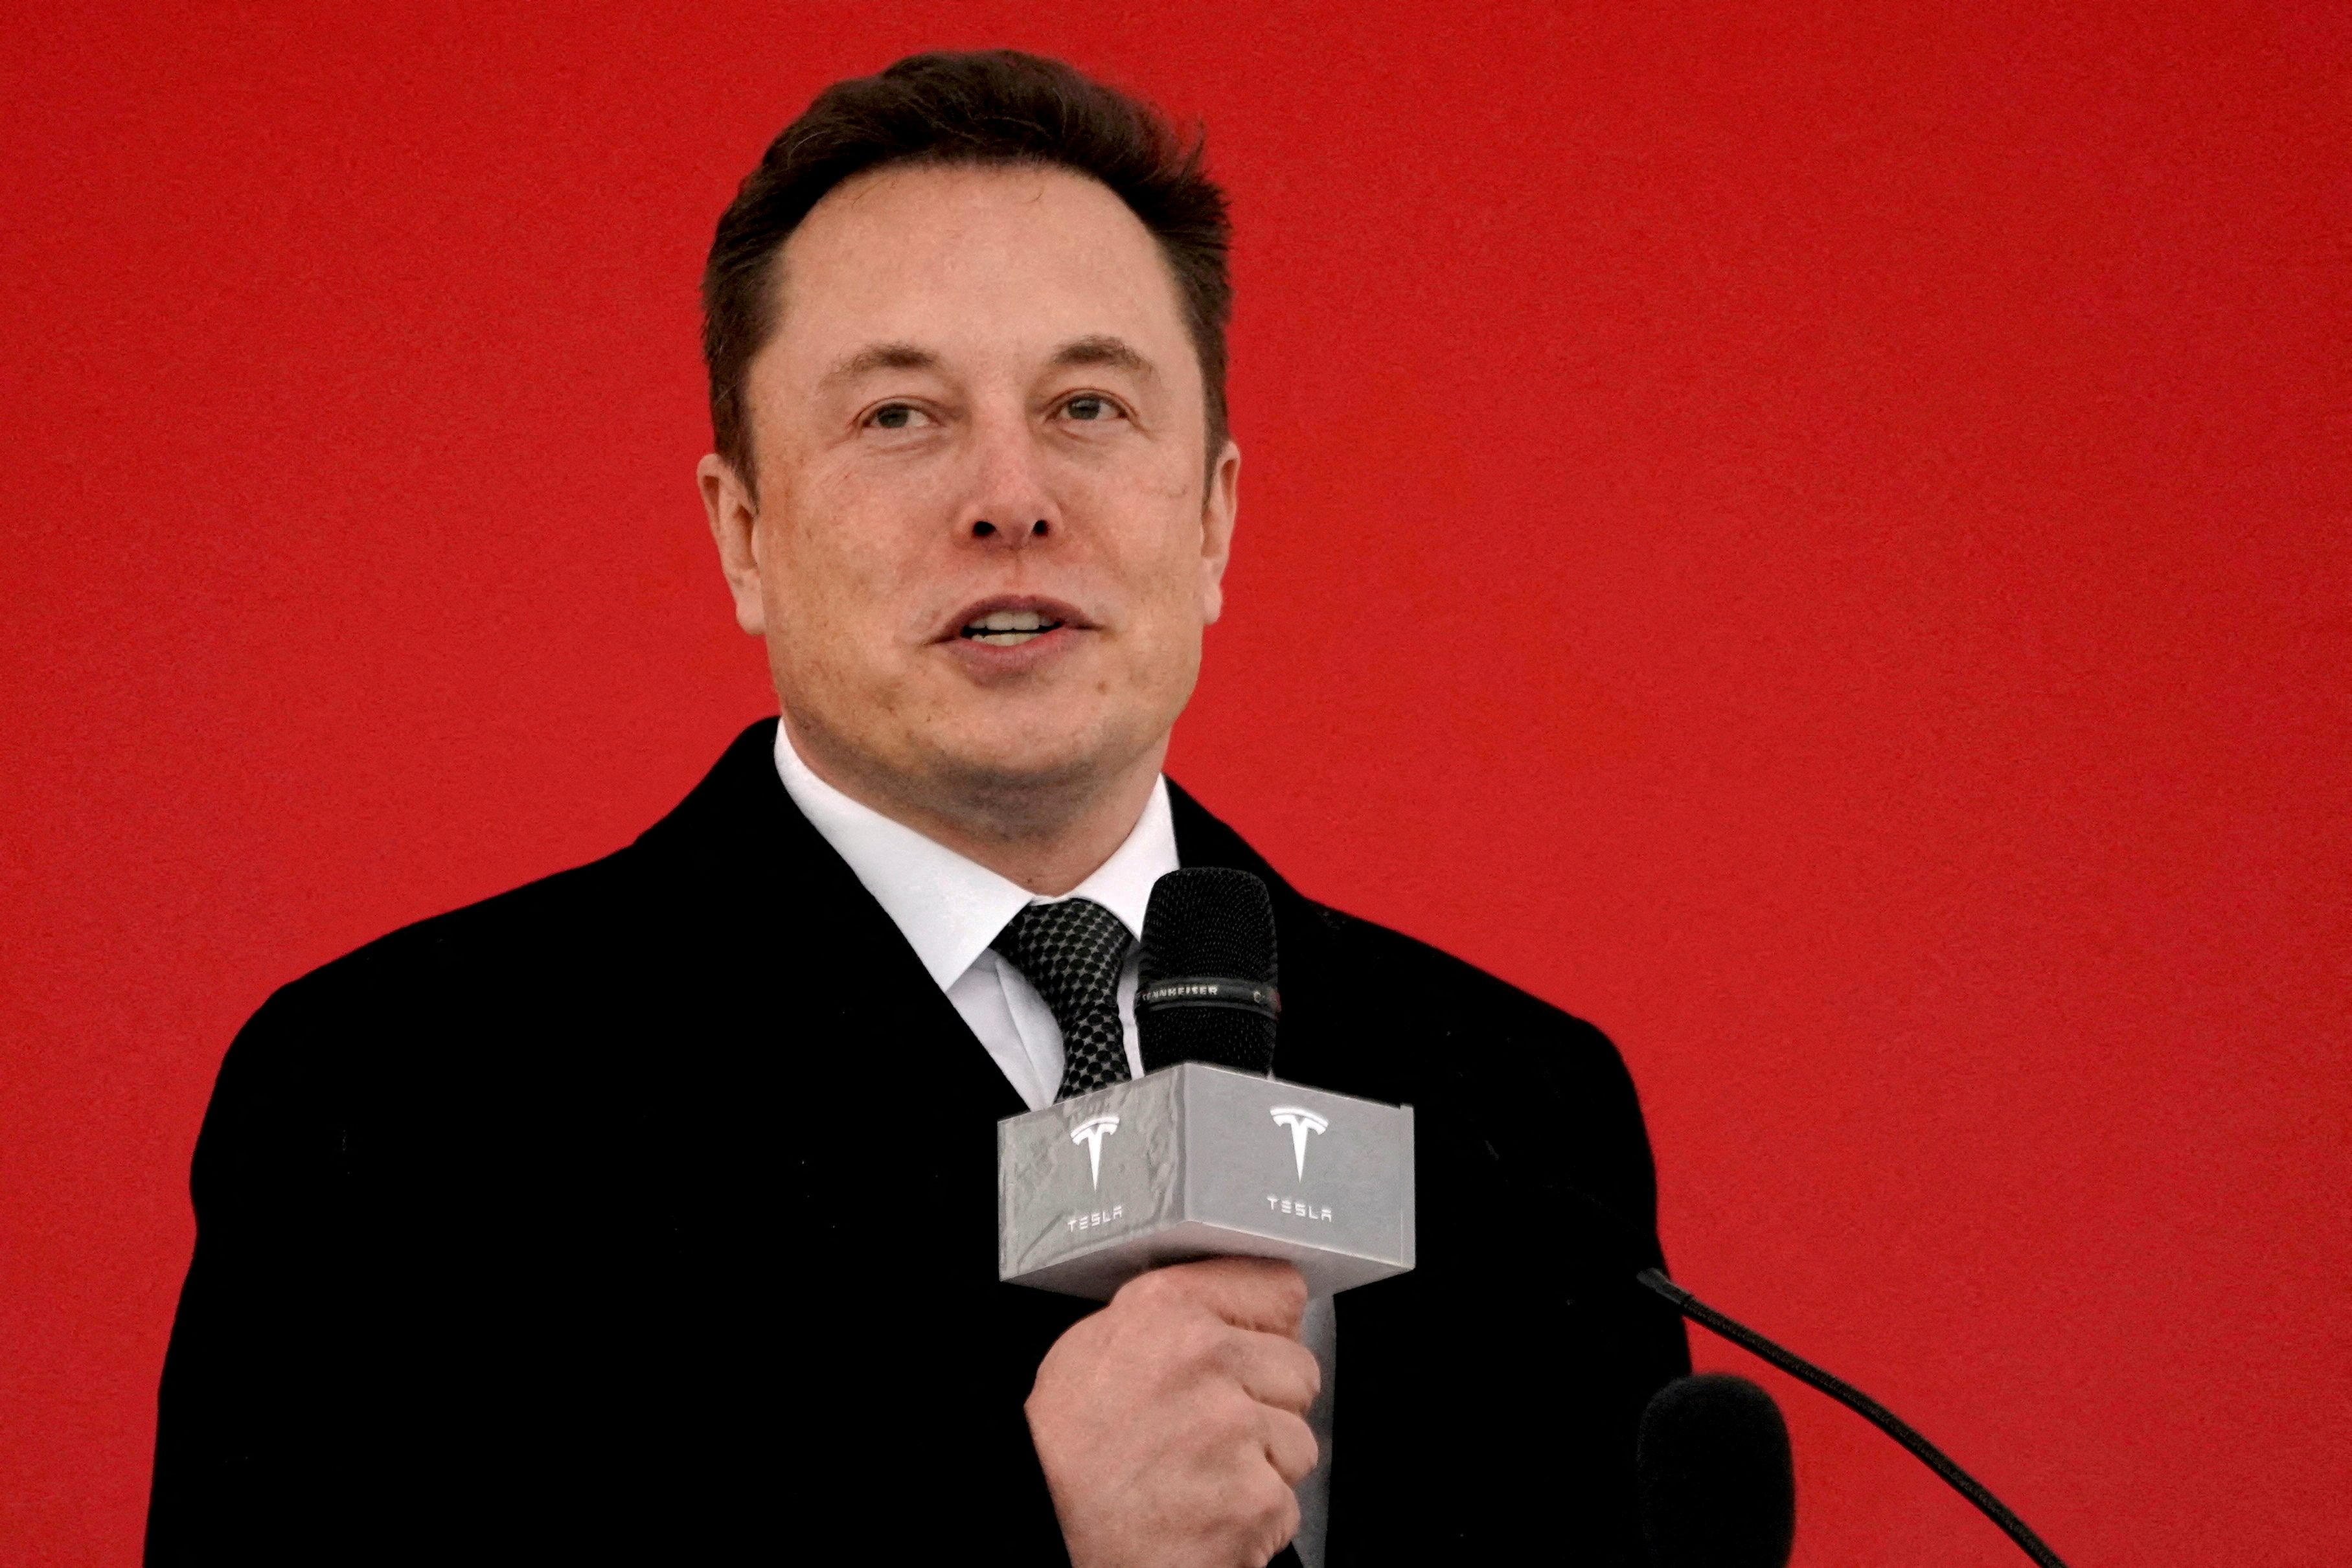 Elon Musk (Reuters)